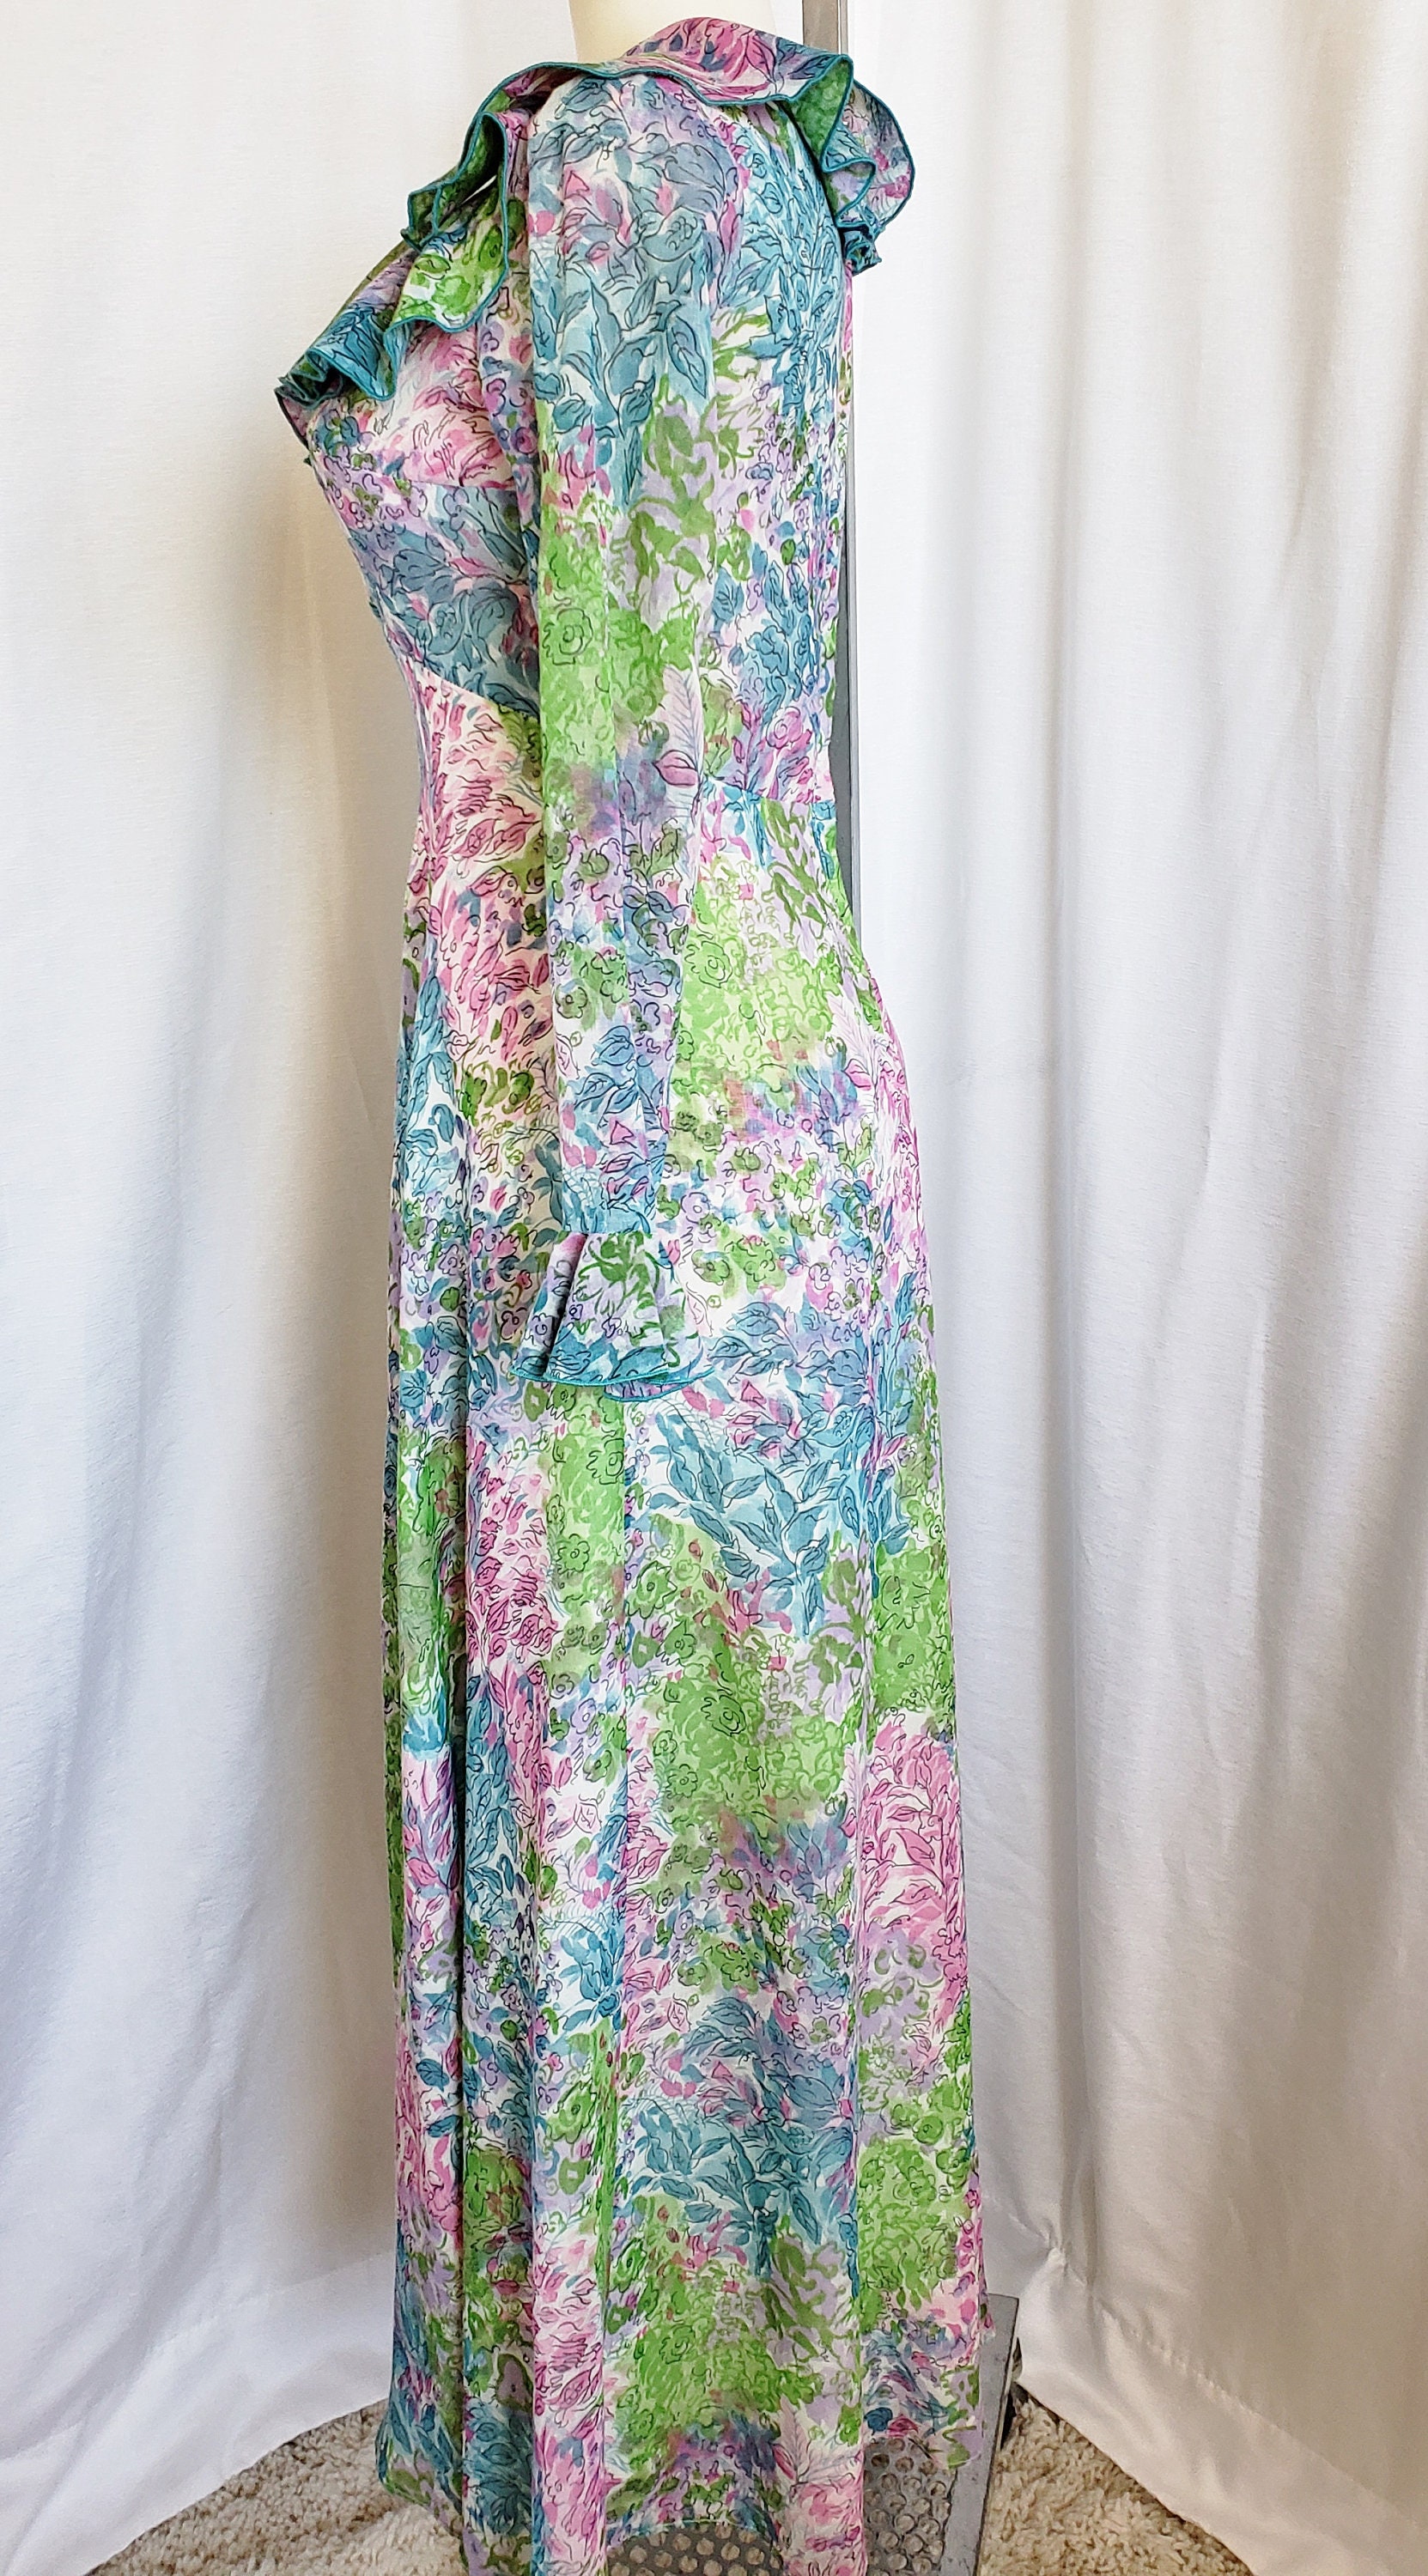 Romantic Ruffled Seductive Summertime Maxi Dress 1960's | Etsy